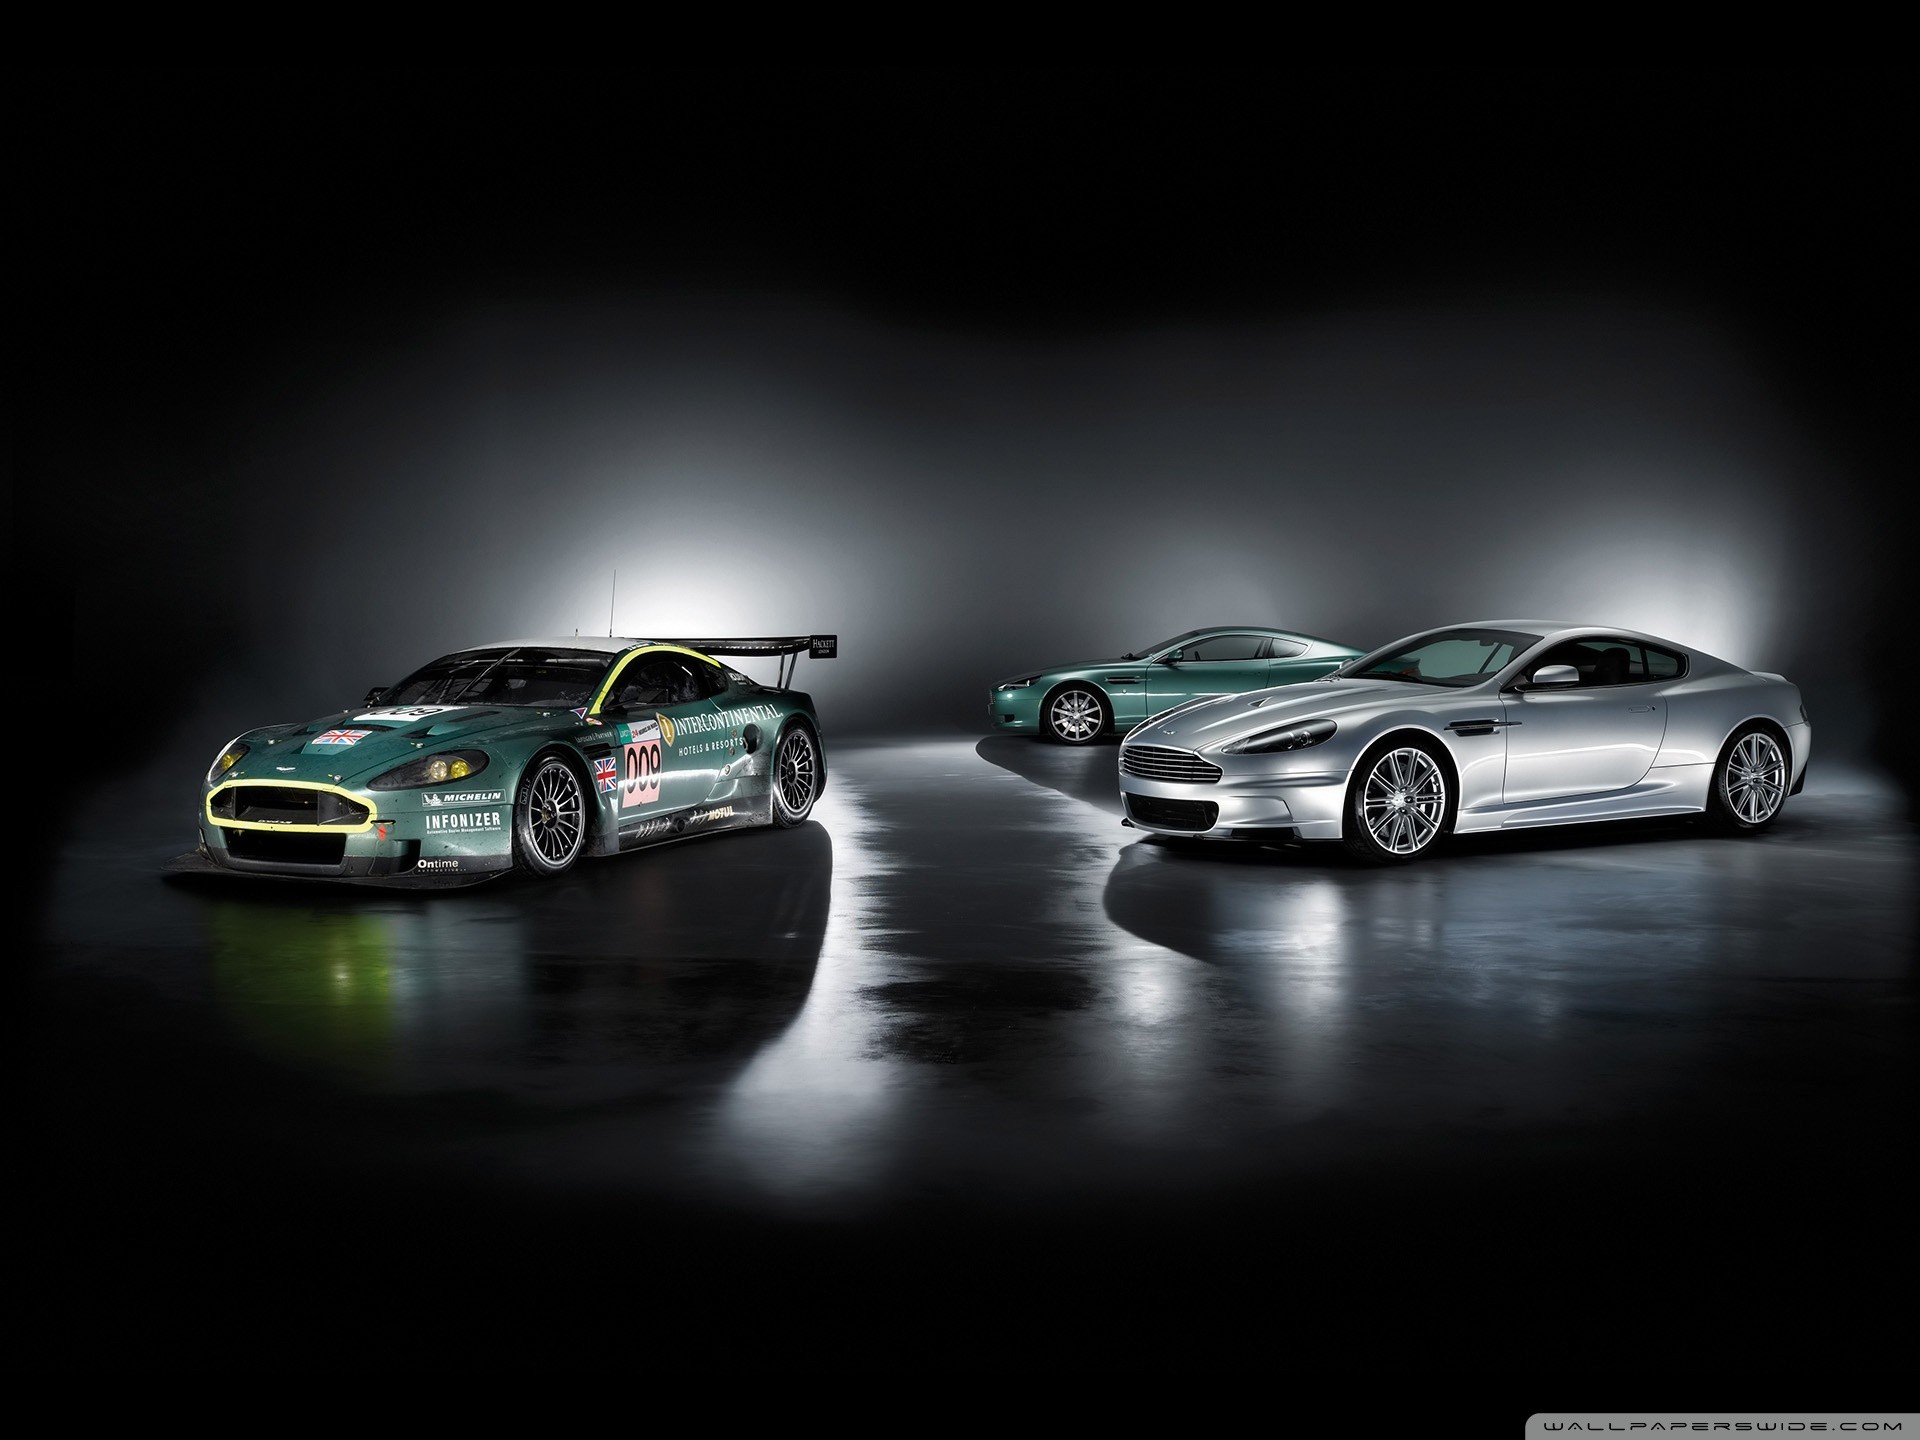 автомобили, Астон Мартин, Aston Martin DBS - обои на рабочий стол